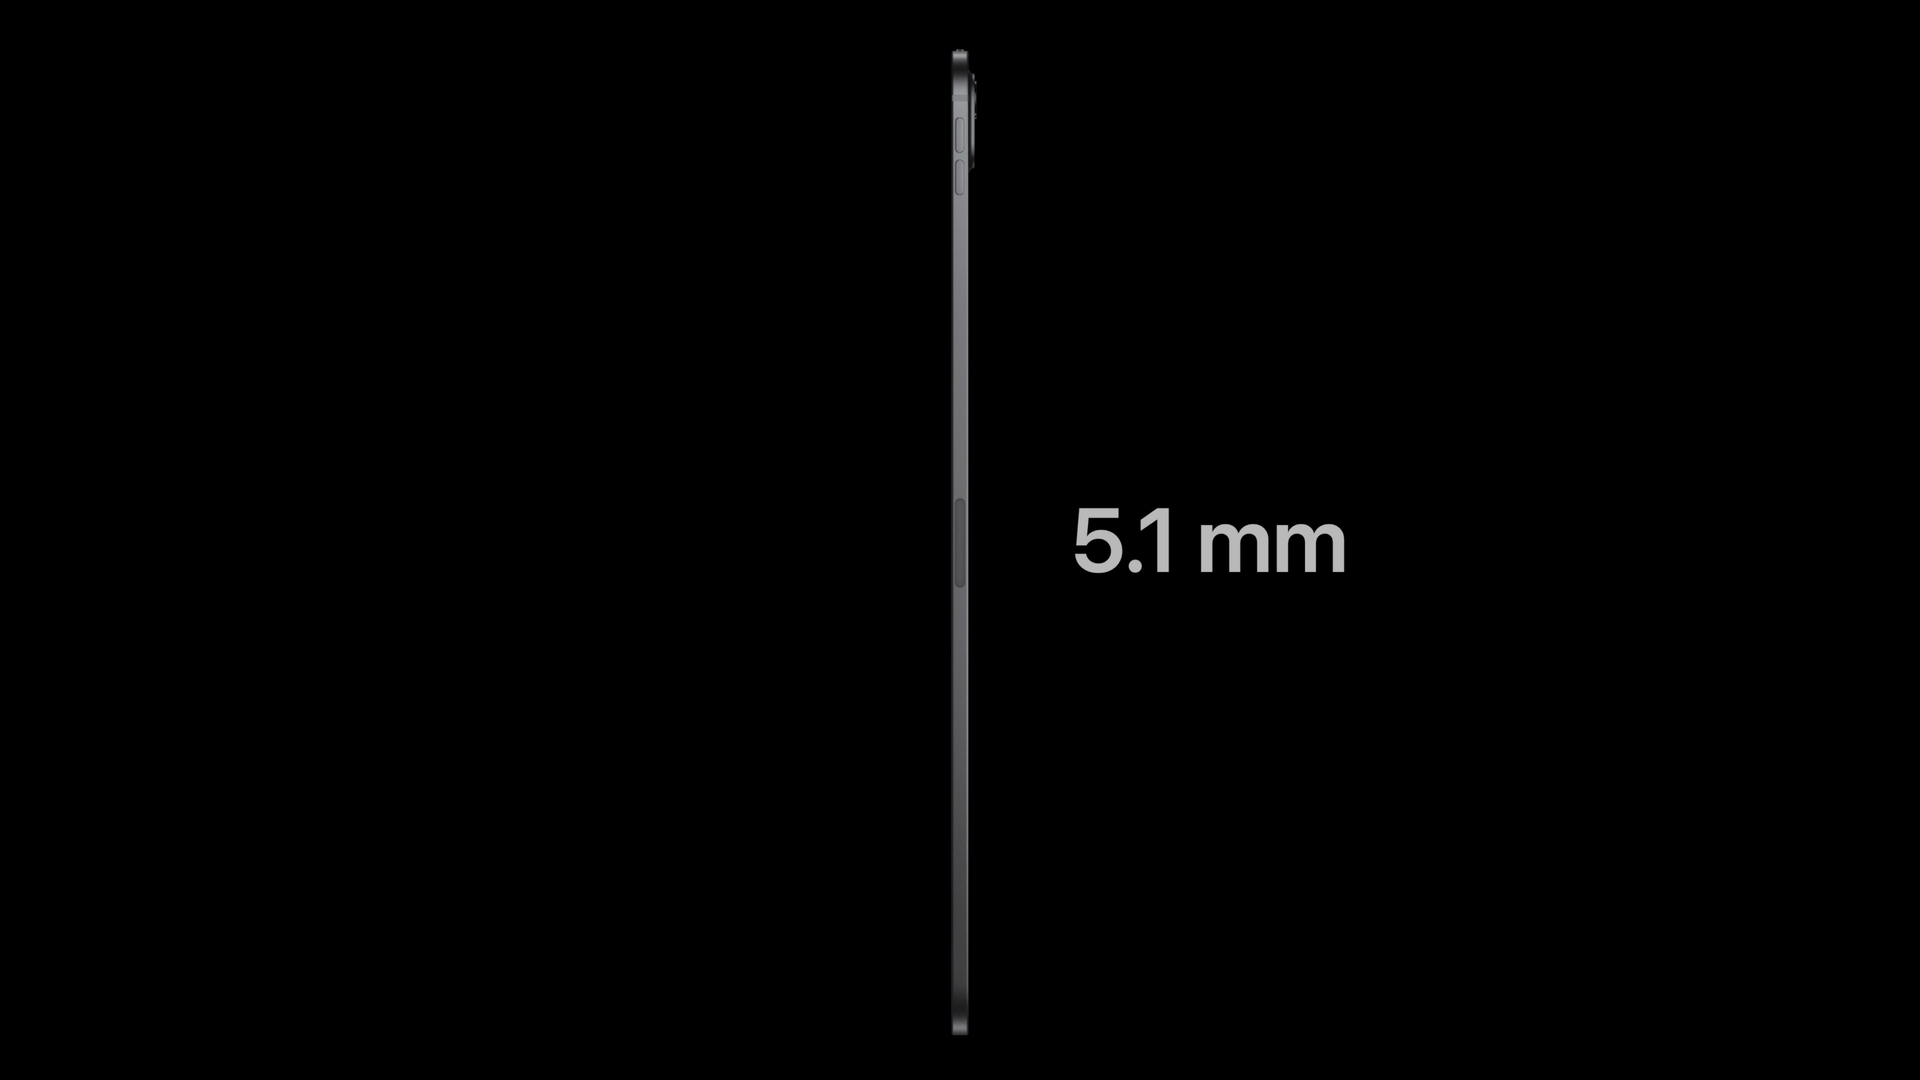 iPad Pro 11 inch có độ dày chỉ 5,1 mm. (Ảnh: Apple)